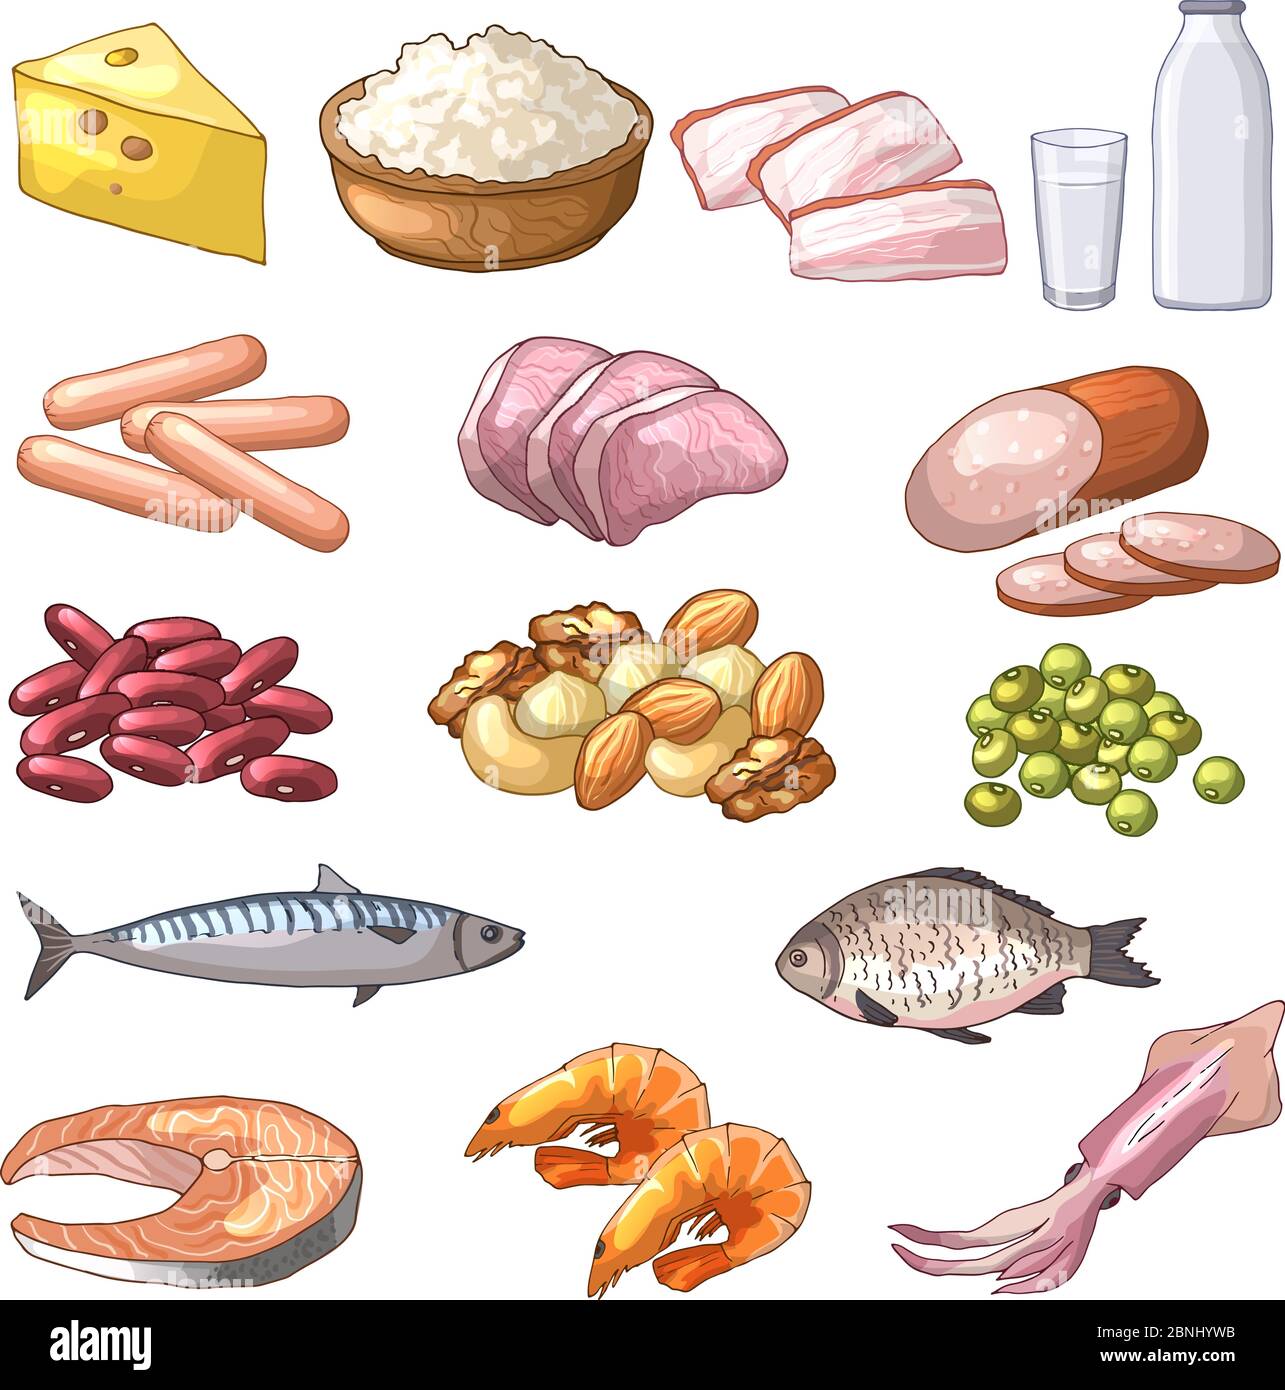 Illustrazioni di prodotti diversi che contengono proteine. Immagini vettoriali in stile cartoon Illustrazione Vettoriale